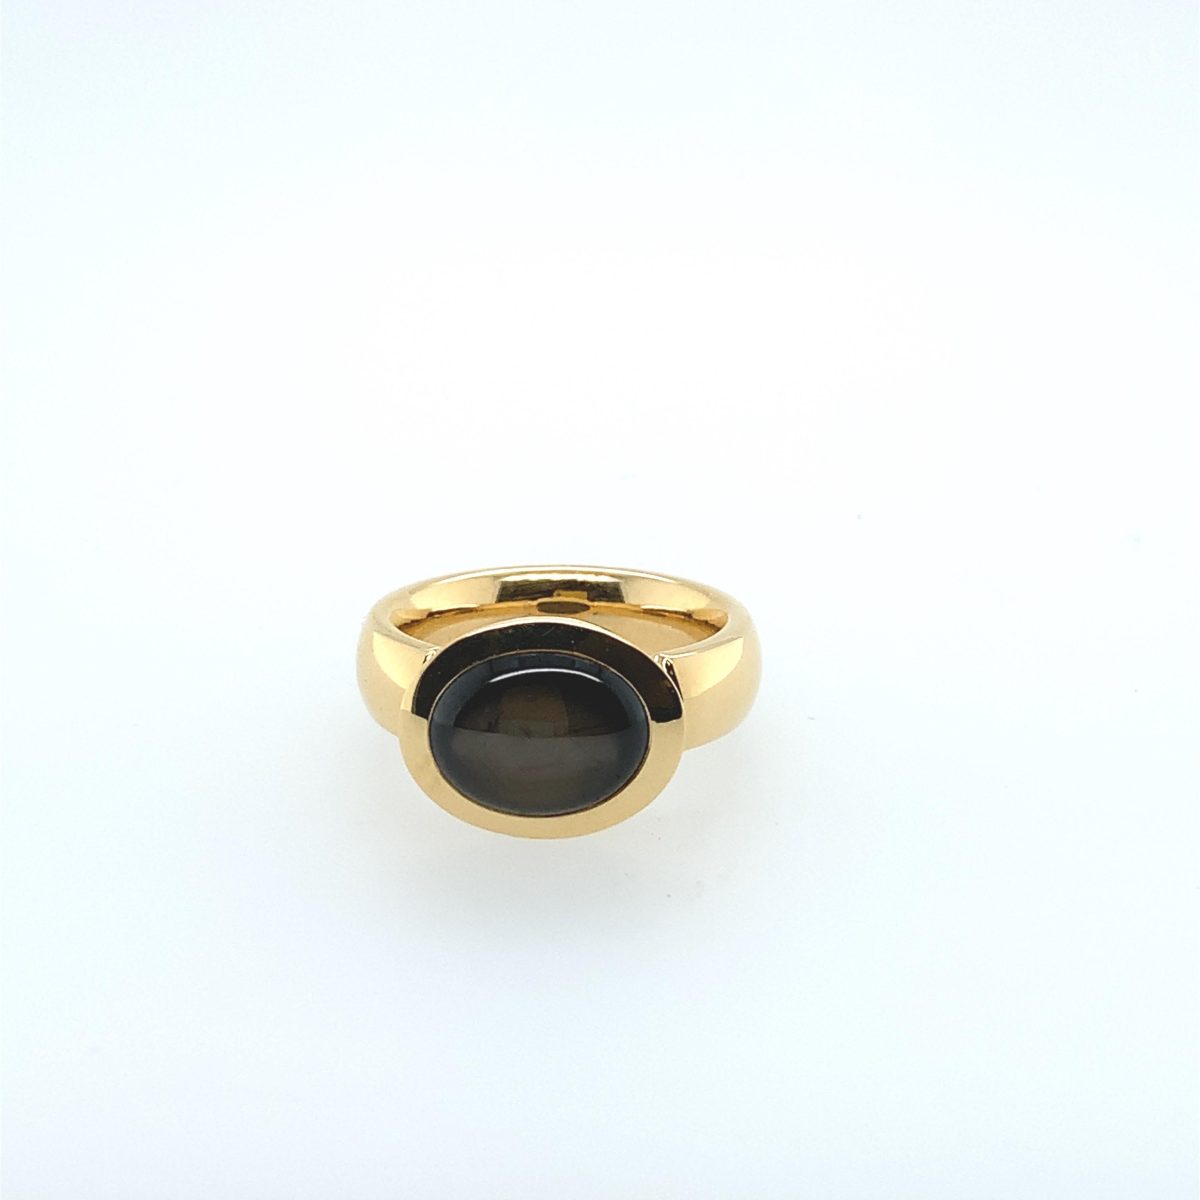 Ring Sternsaphir 18K Gelbgold - GalerieVoigt - 423dare05-1